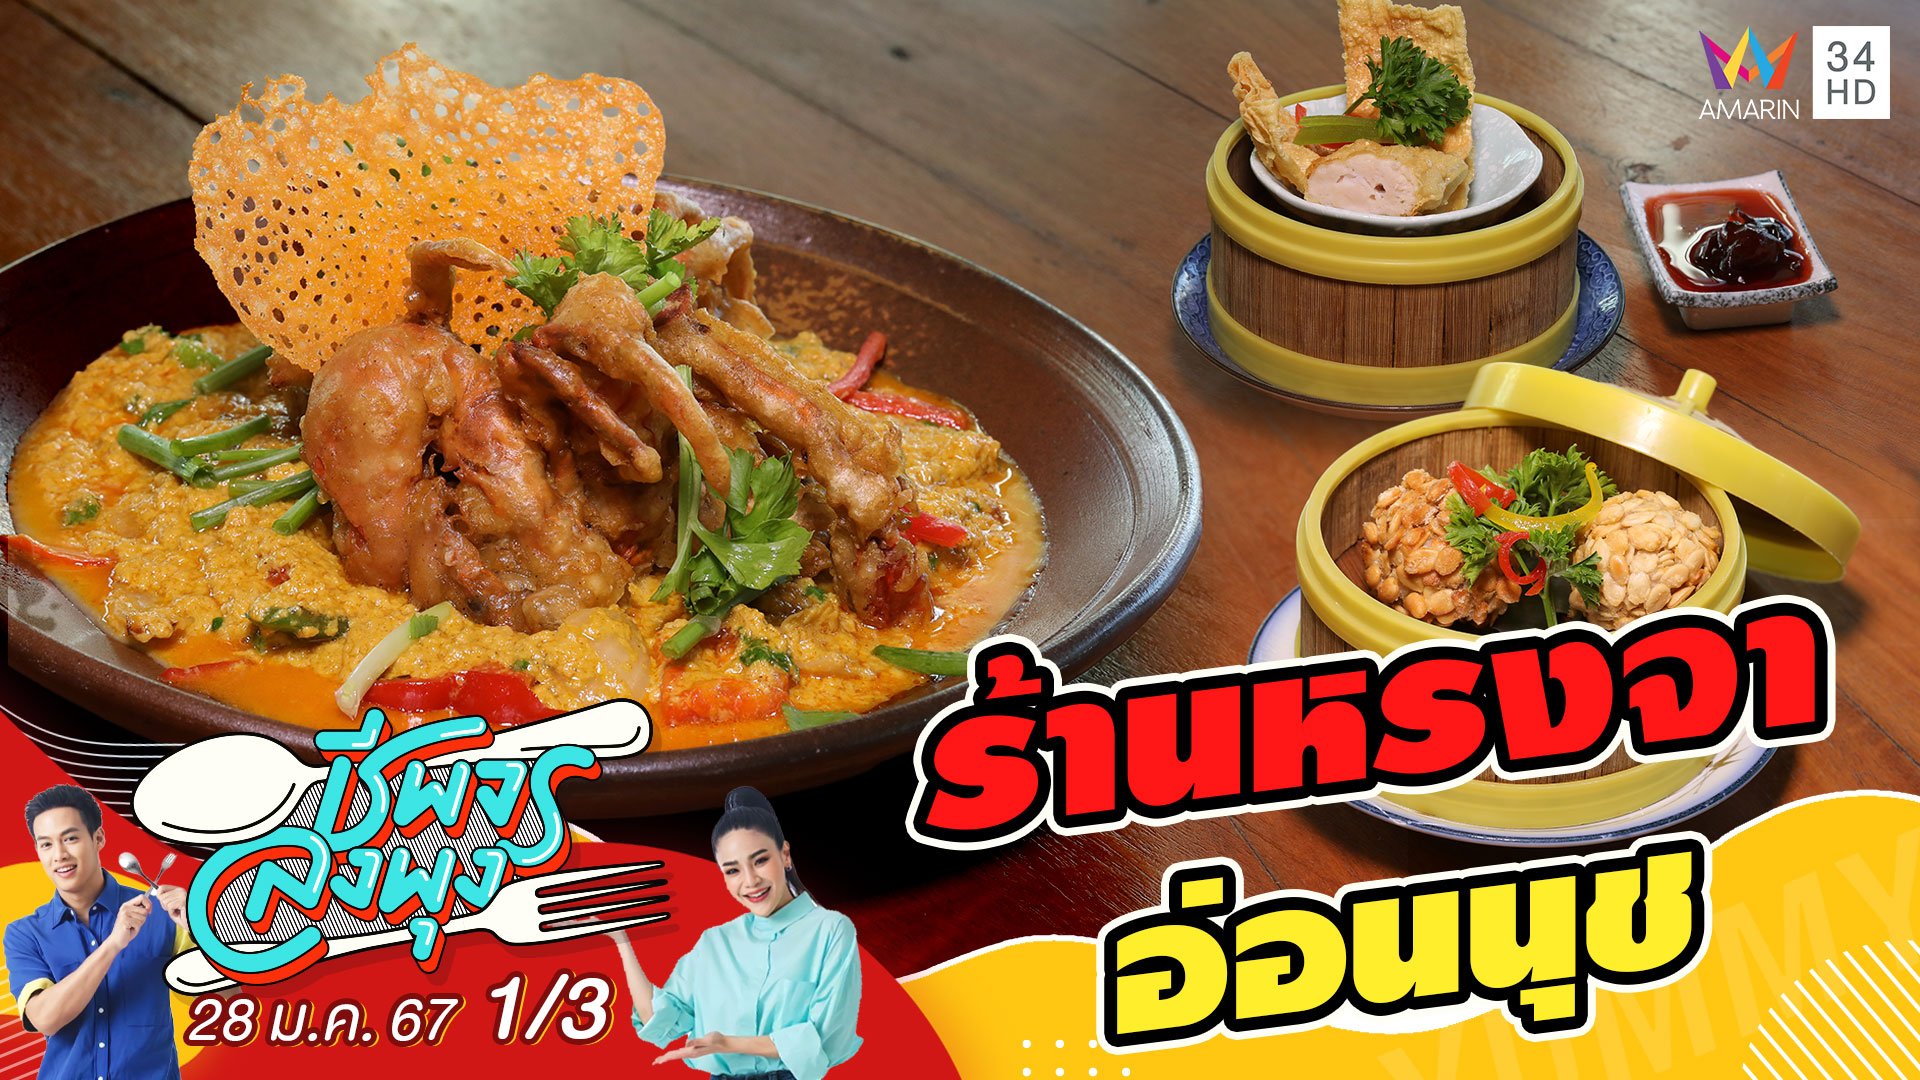 "ร้านหรงจา อ่อนนุช" ร้านอาหารจีนฮาลาล | ชีพจรลงพุง | 28 ม.ค. 67 (1/3) | AMARIN TVHD34